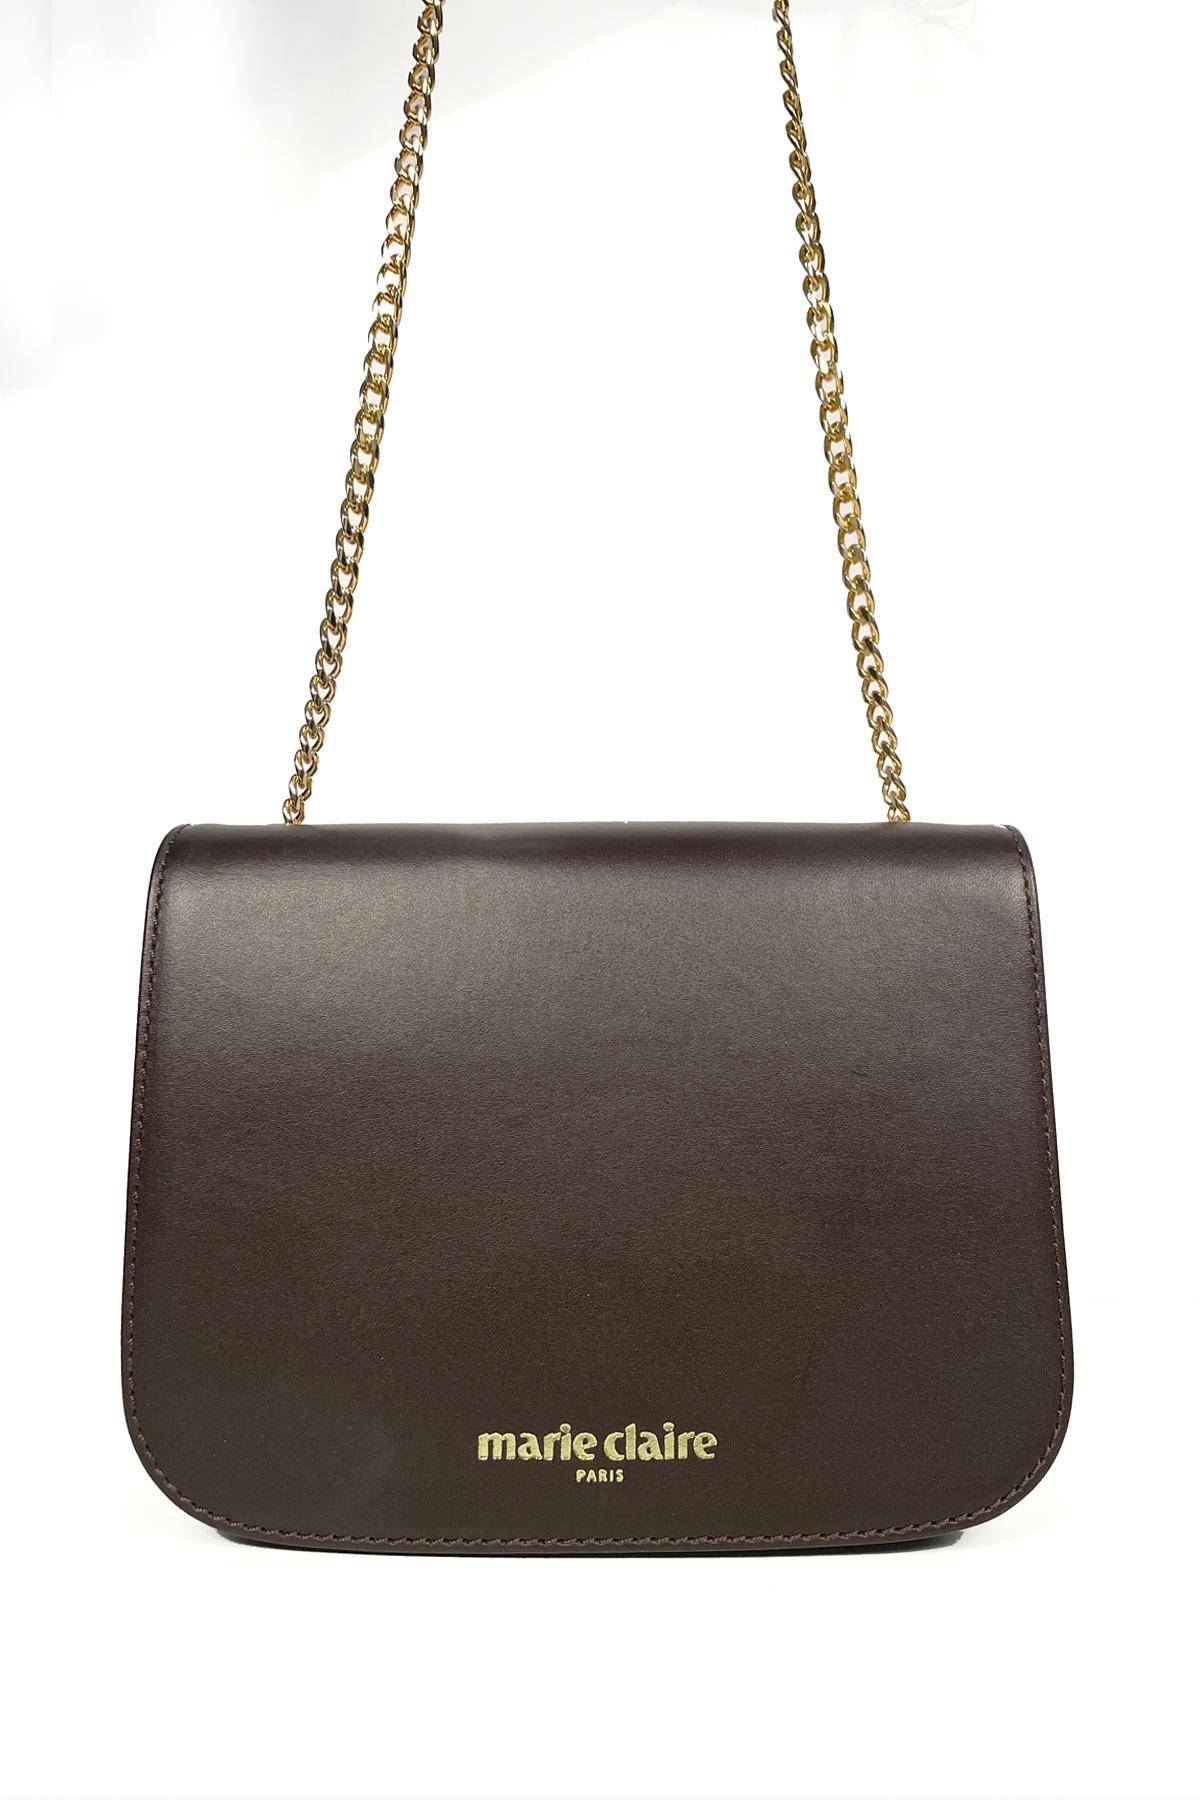 Женская сумка кросс-боди Marie Claire, коричневая